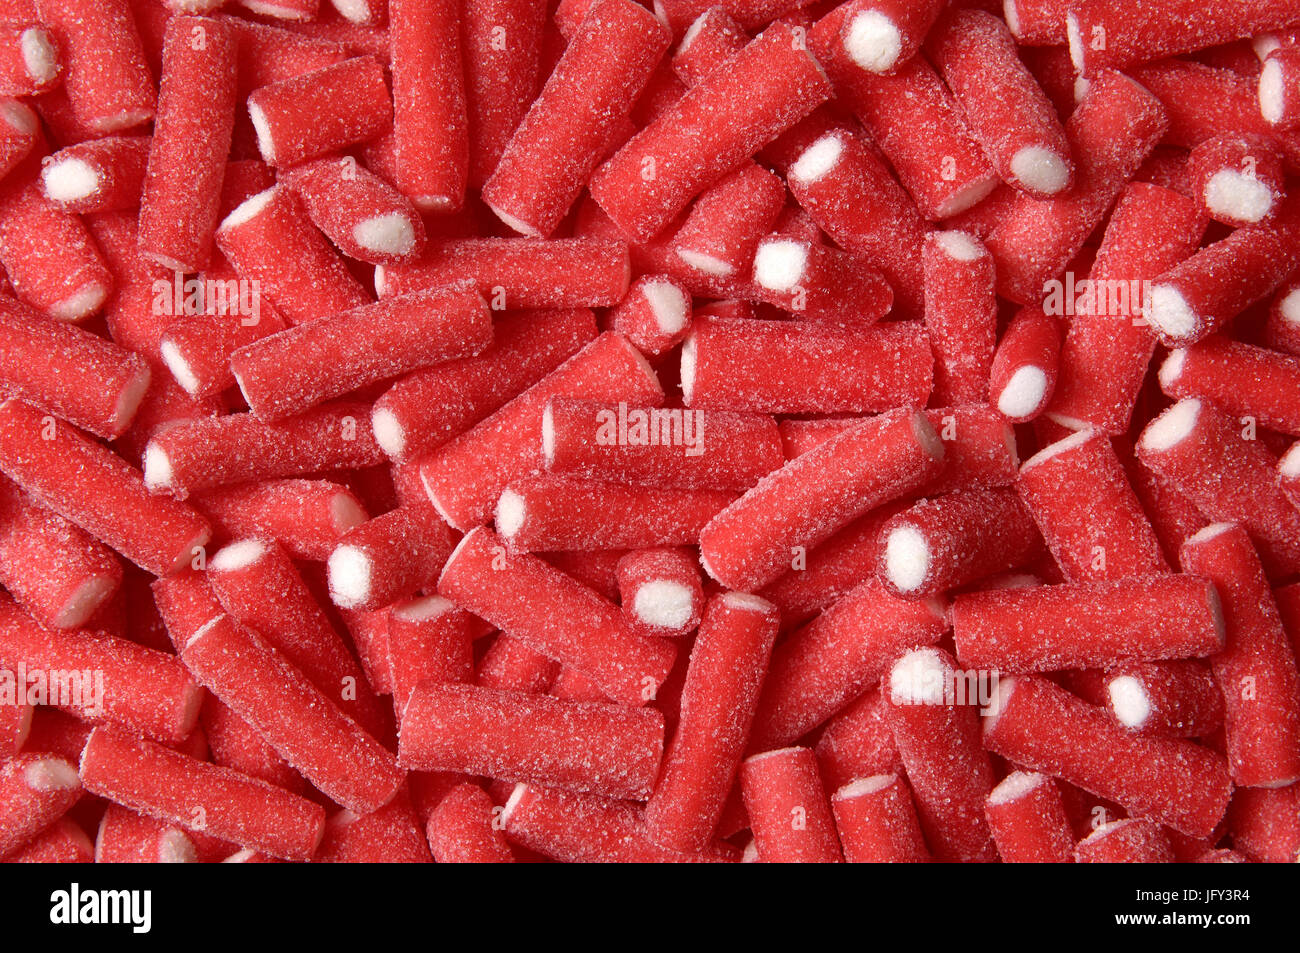 Red Sticks Gummies